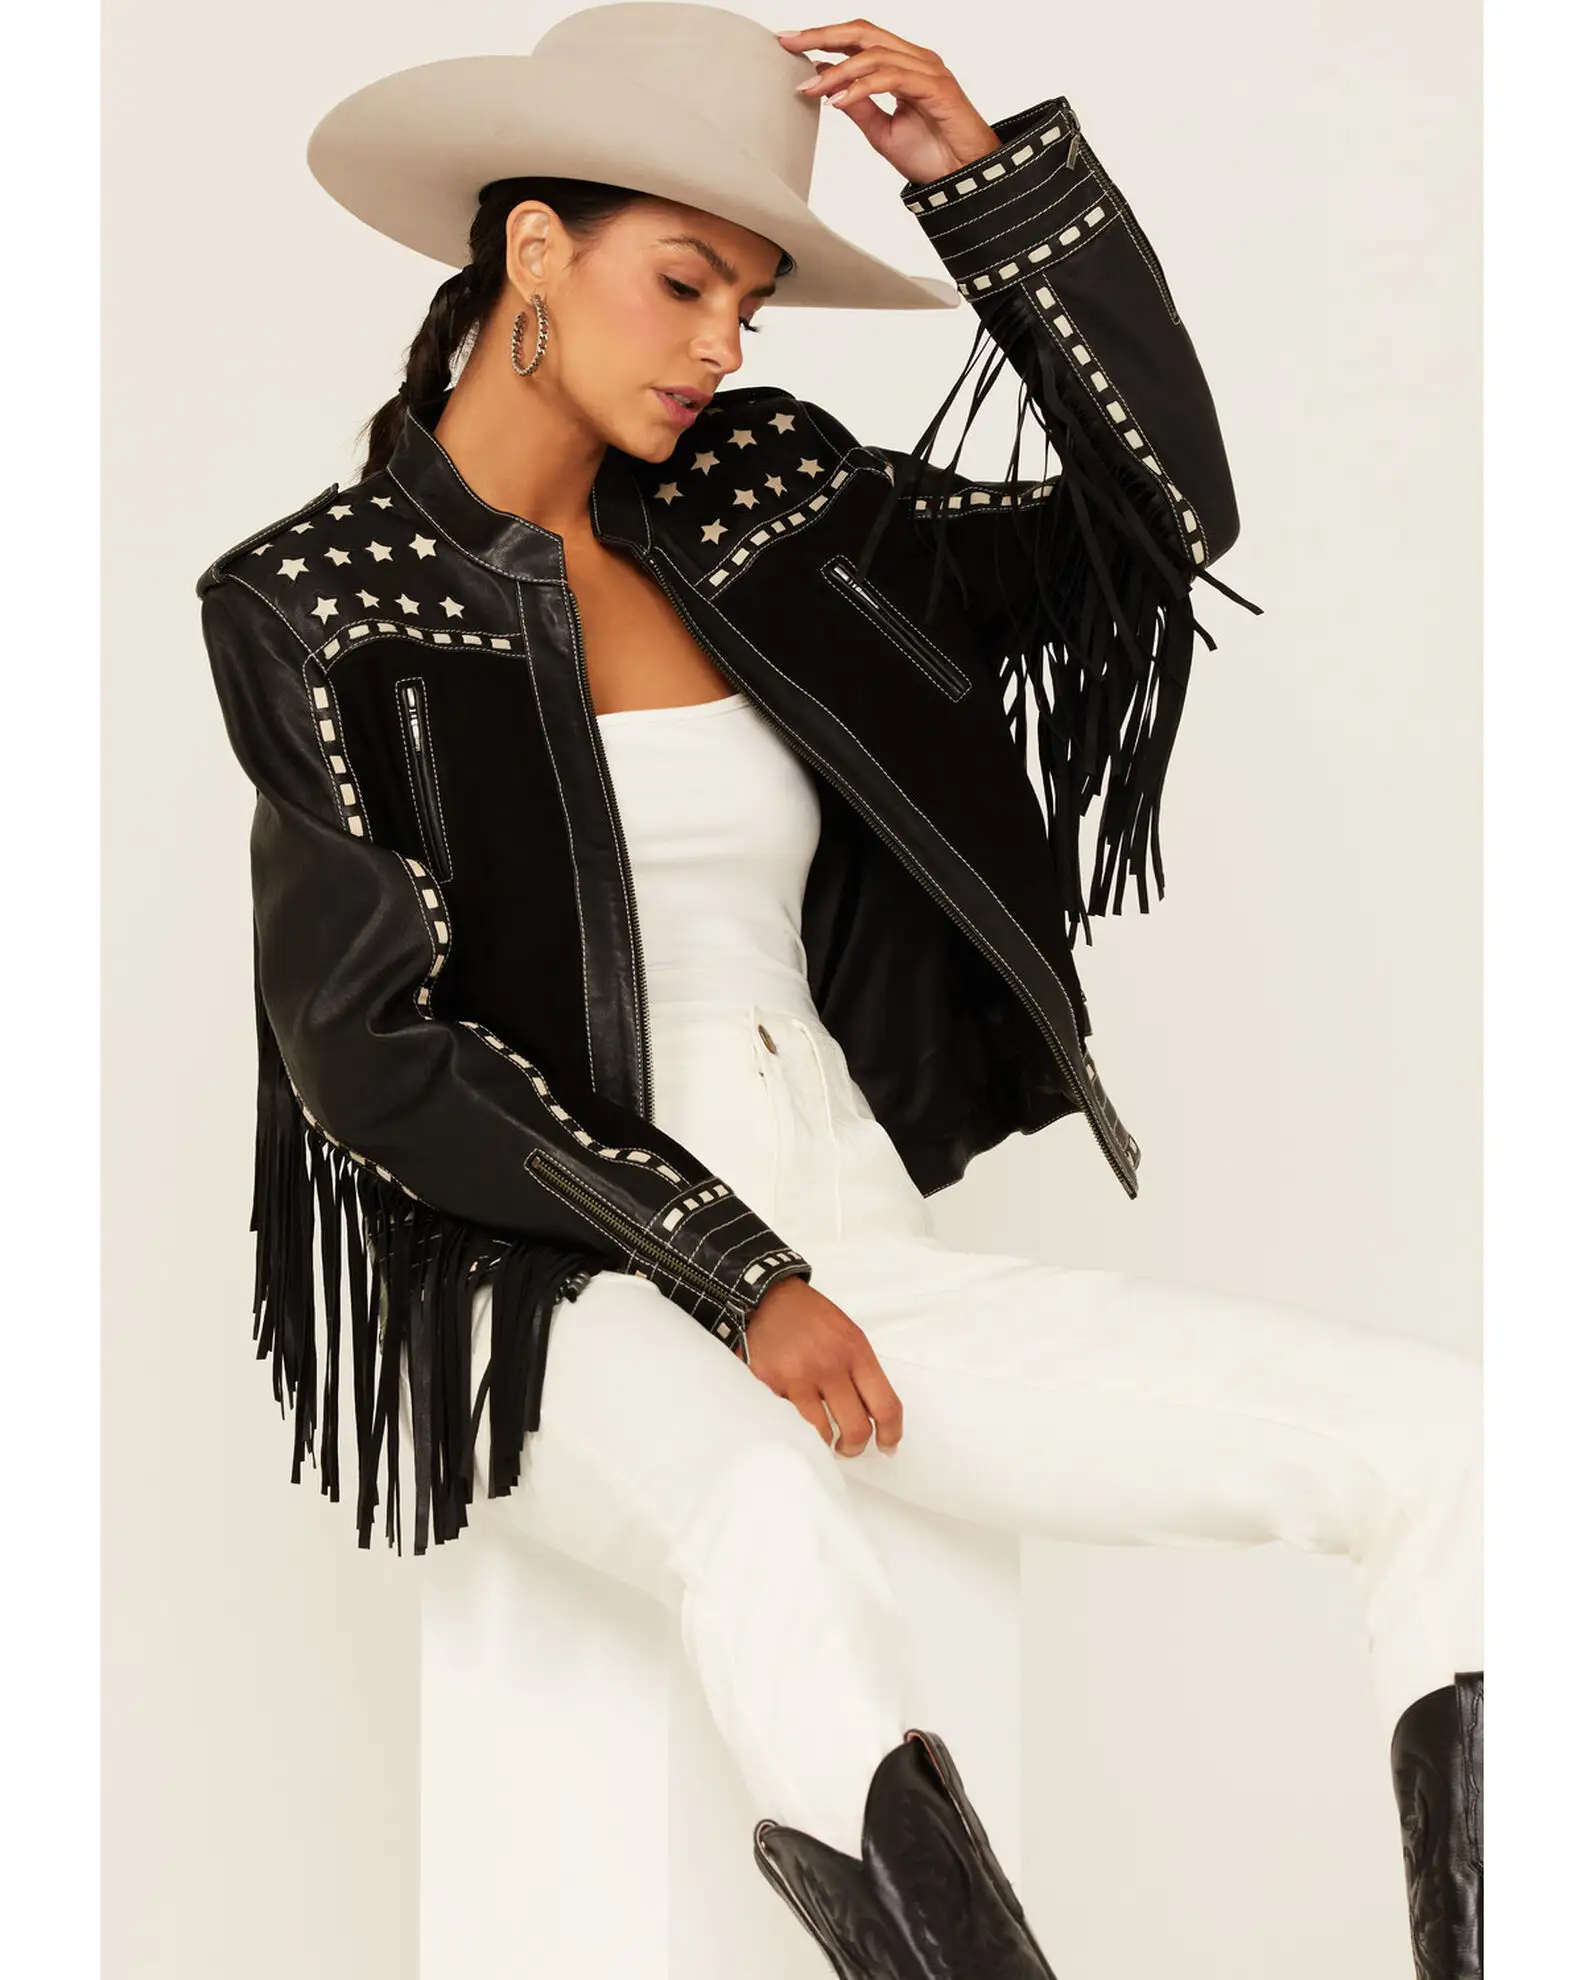 Western Cowgirl เสื้อแจ็คเก็ตหนังแท้สำหรับนักขี่จักรยาน,เสื้อแจ็คเก็ตหนังแกะแบบมีพู่ฝอยดีไซน์ล่าสุด